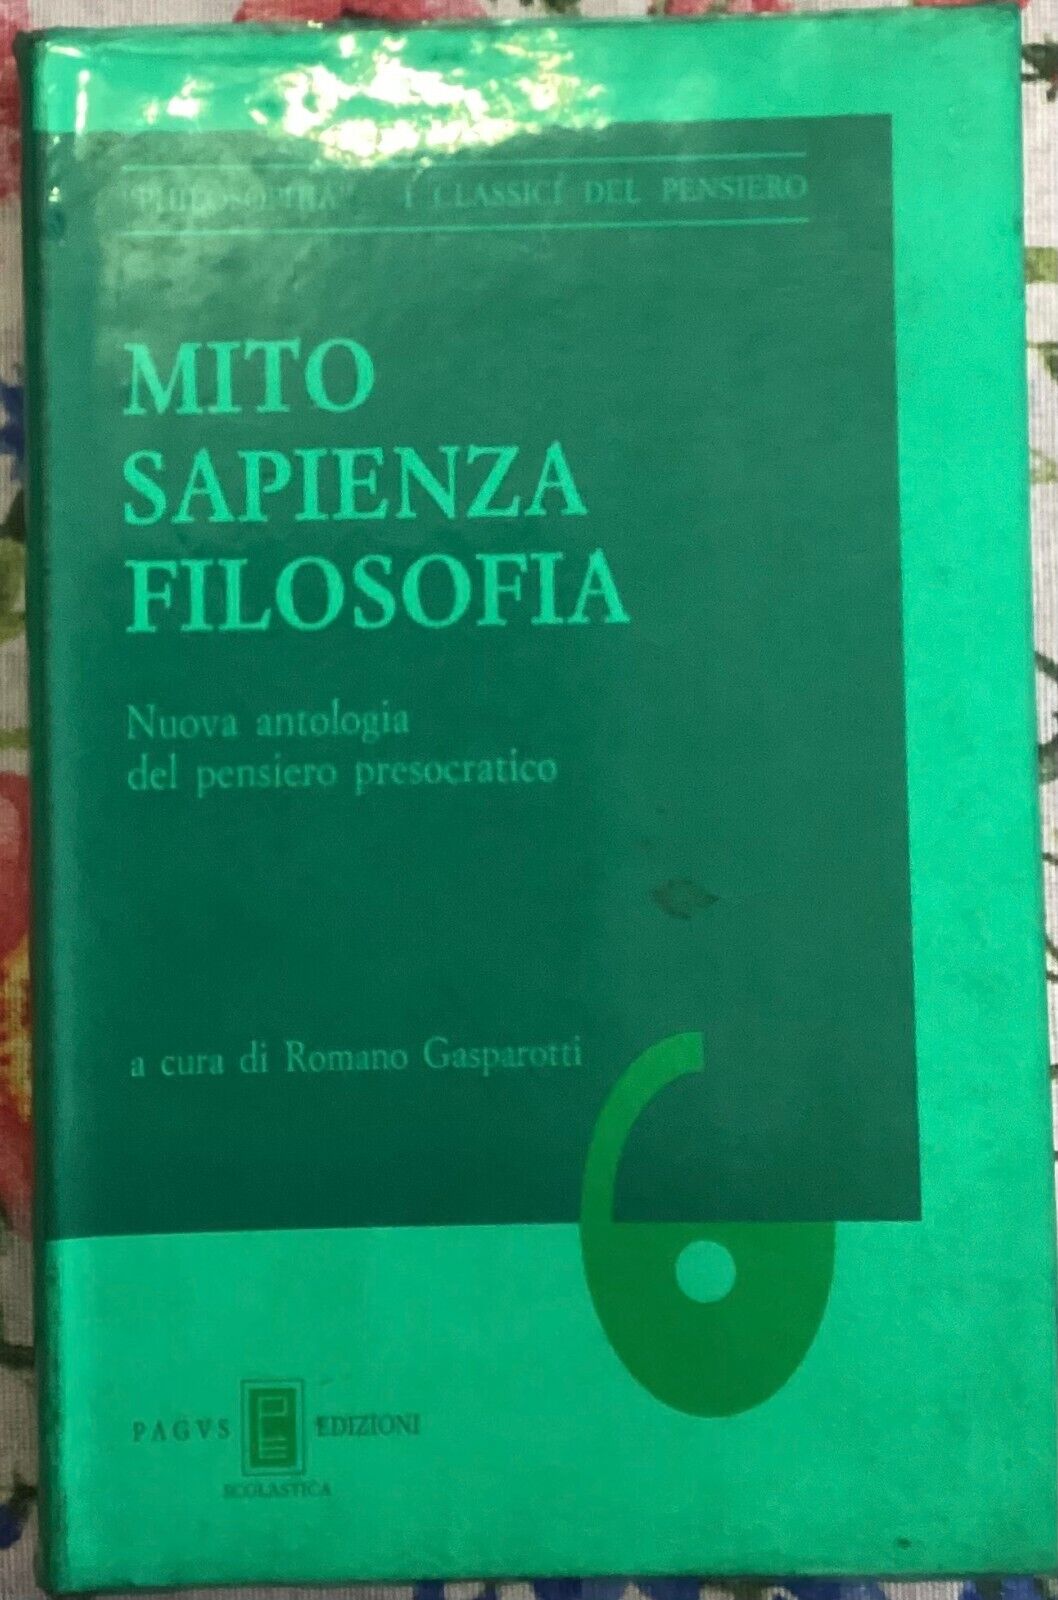 Mito Sapienza Filosofia di Romano Gasparotti, 1992, Pagvs Edizioni Scolastica